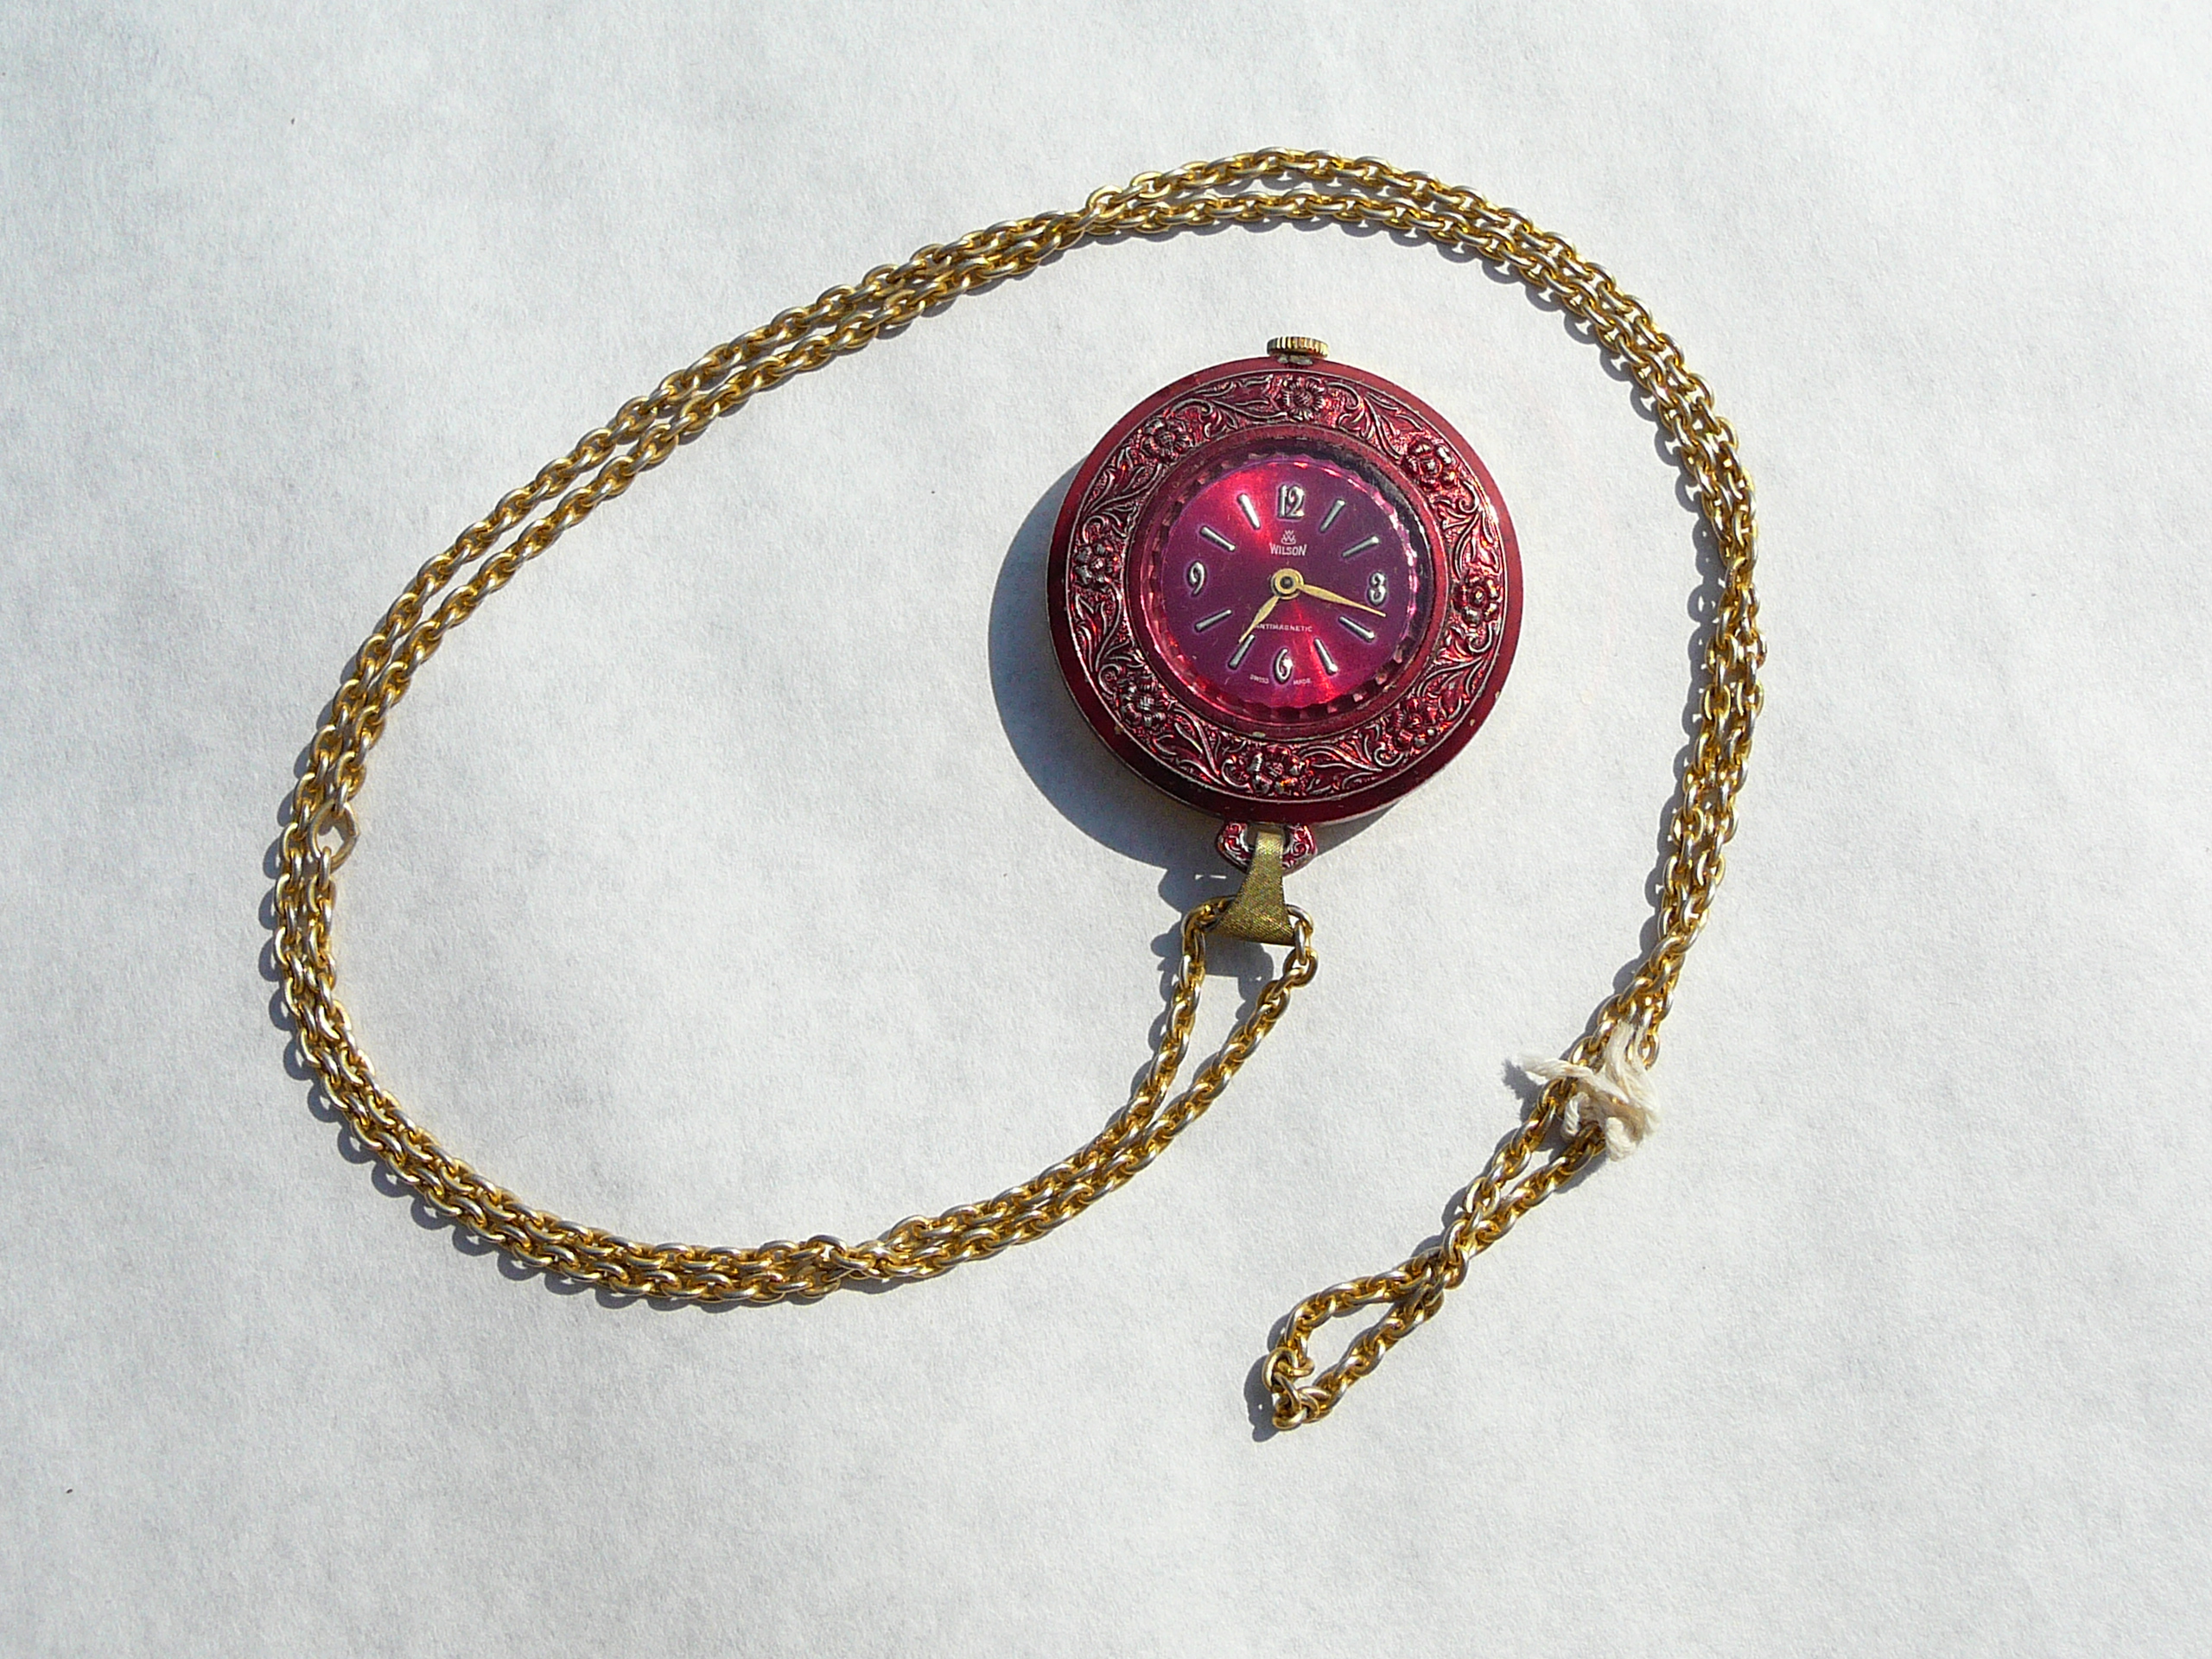 Ladies vintage pendant watch - Image 2 of 3